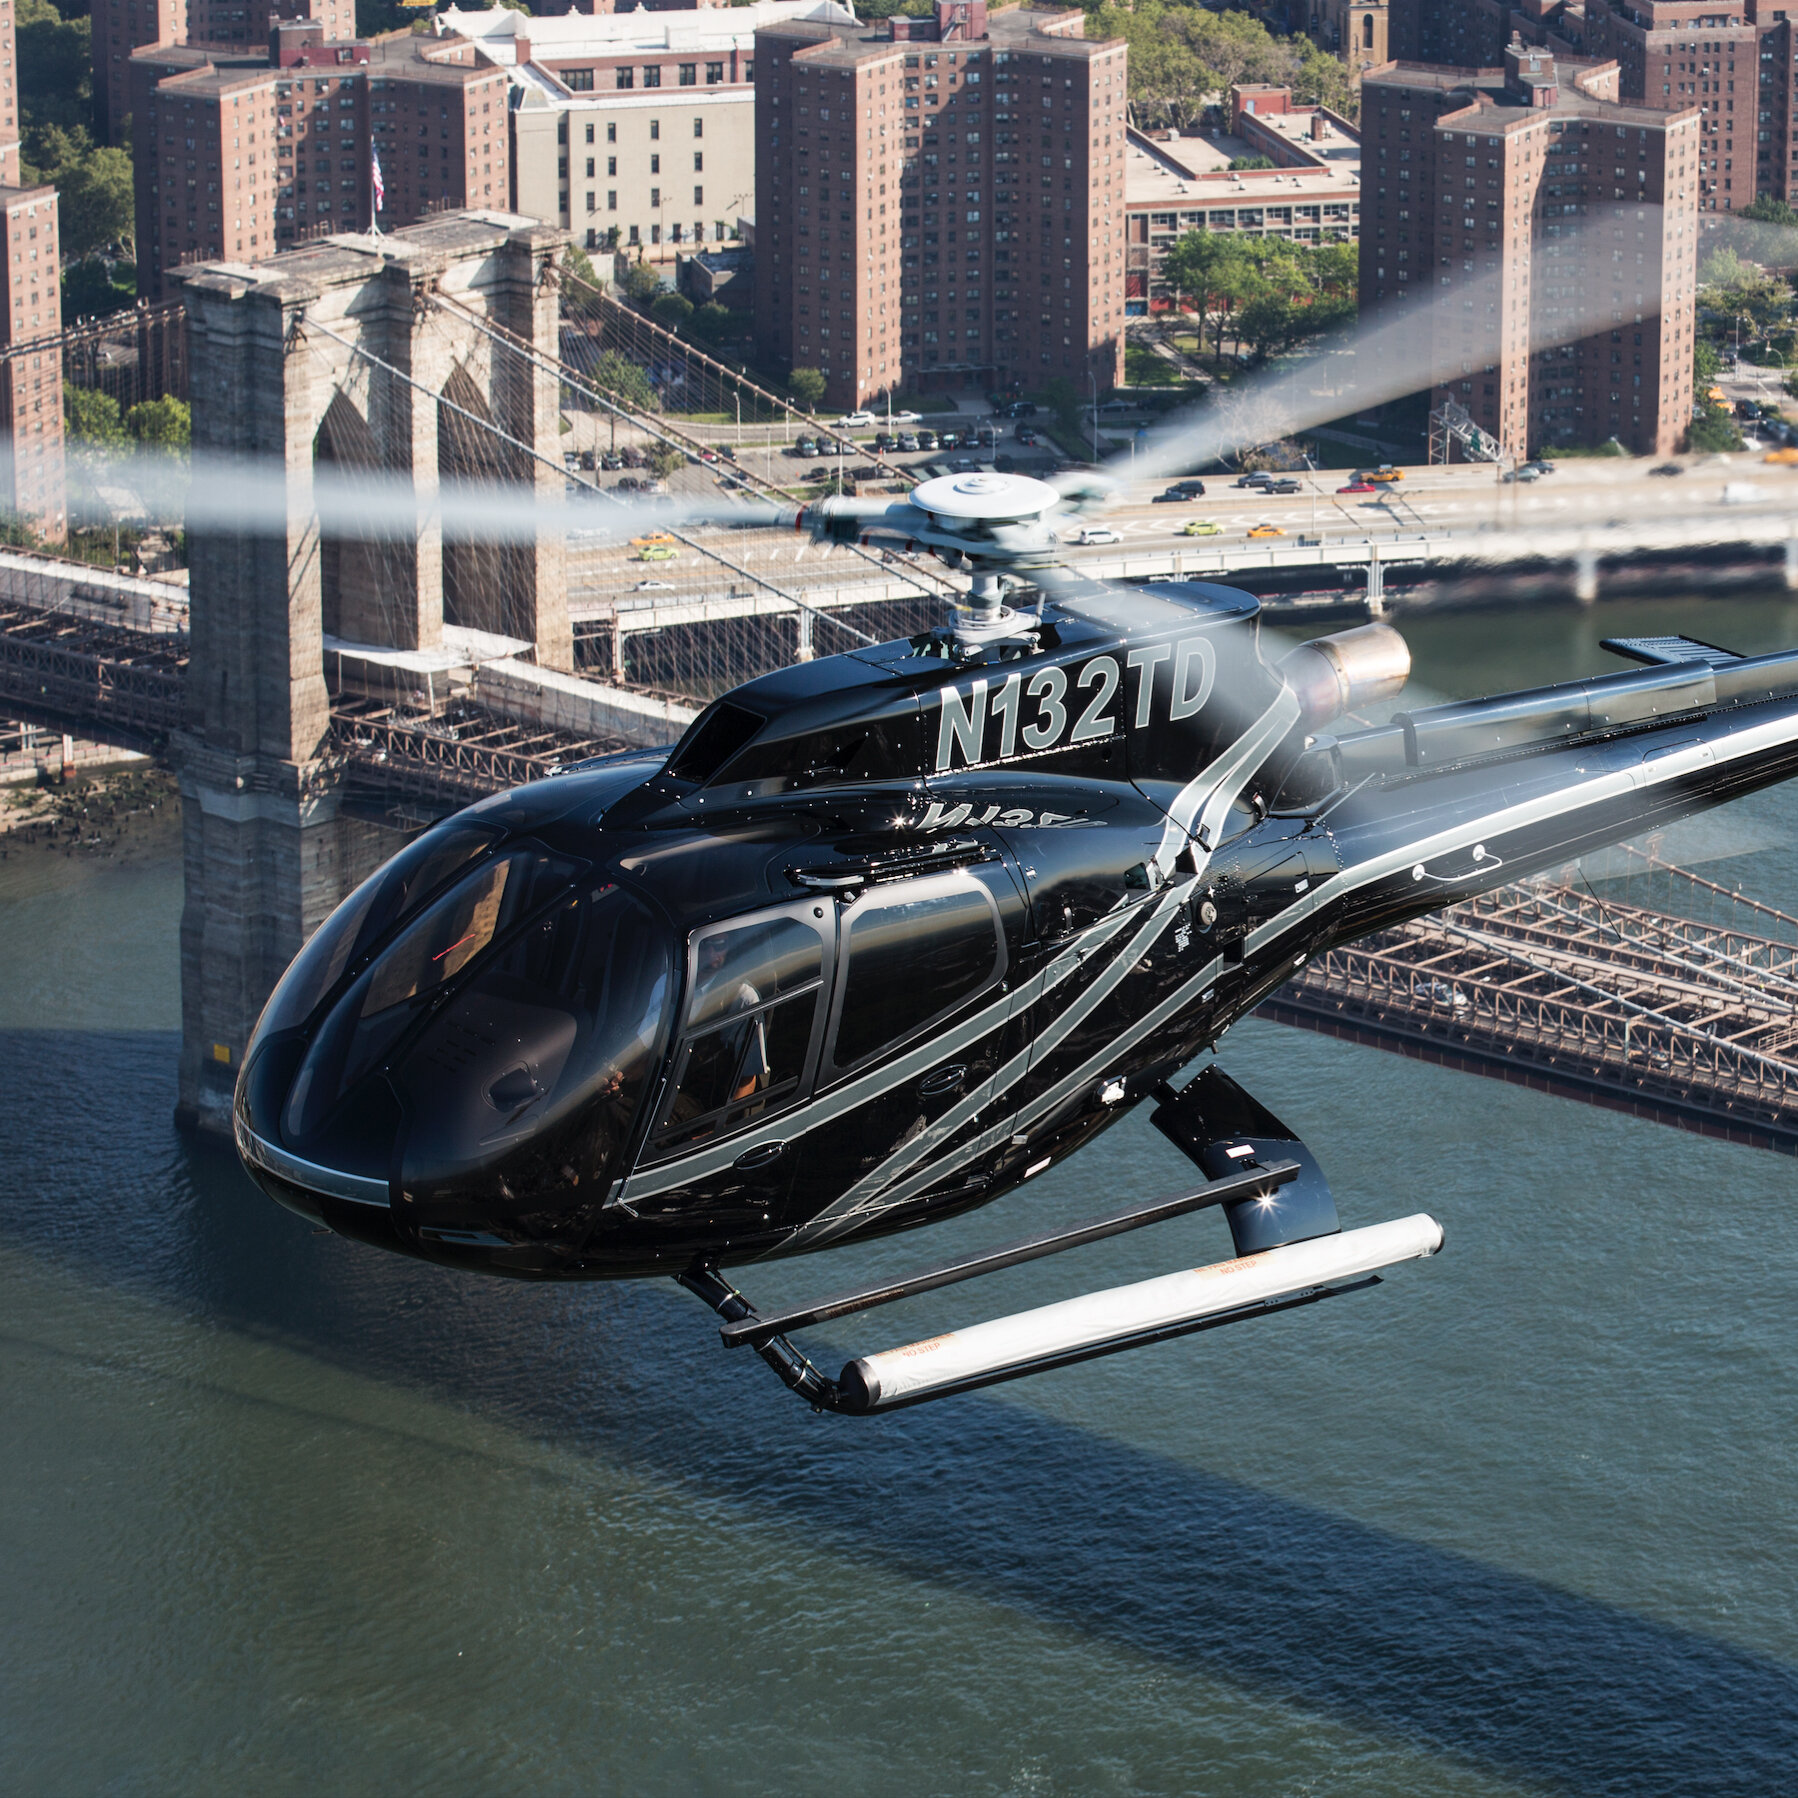 Полет на вертолете над бруклинским мостом.jpg